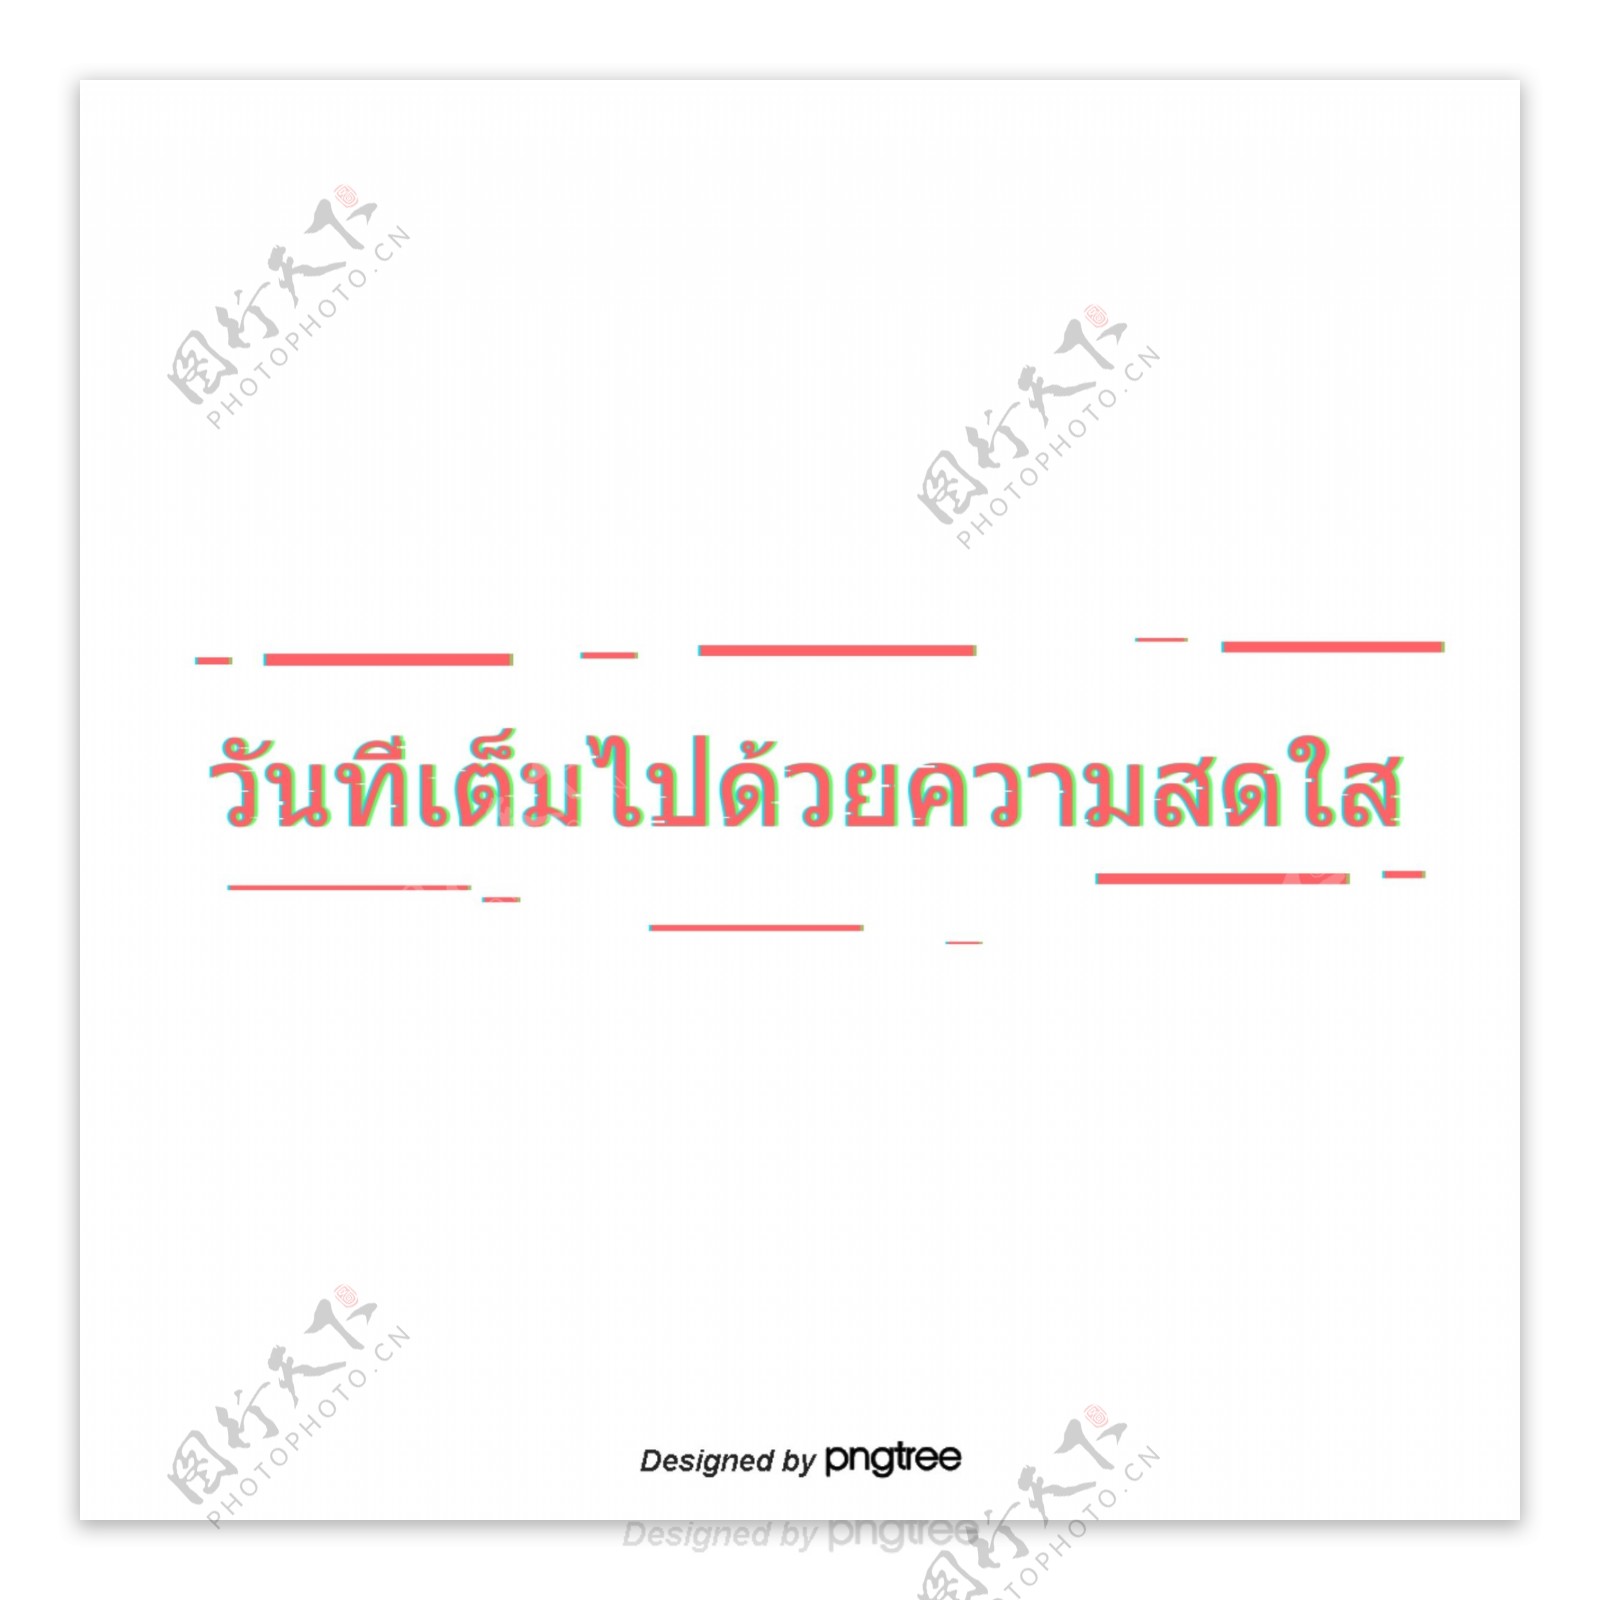 在这个充满喜悦的日子泰国红色字体